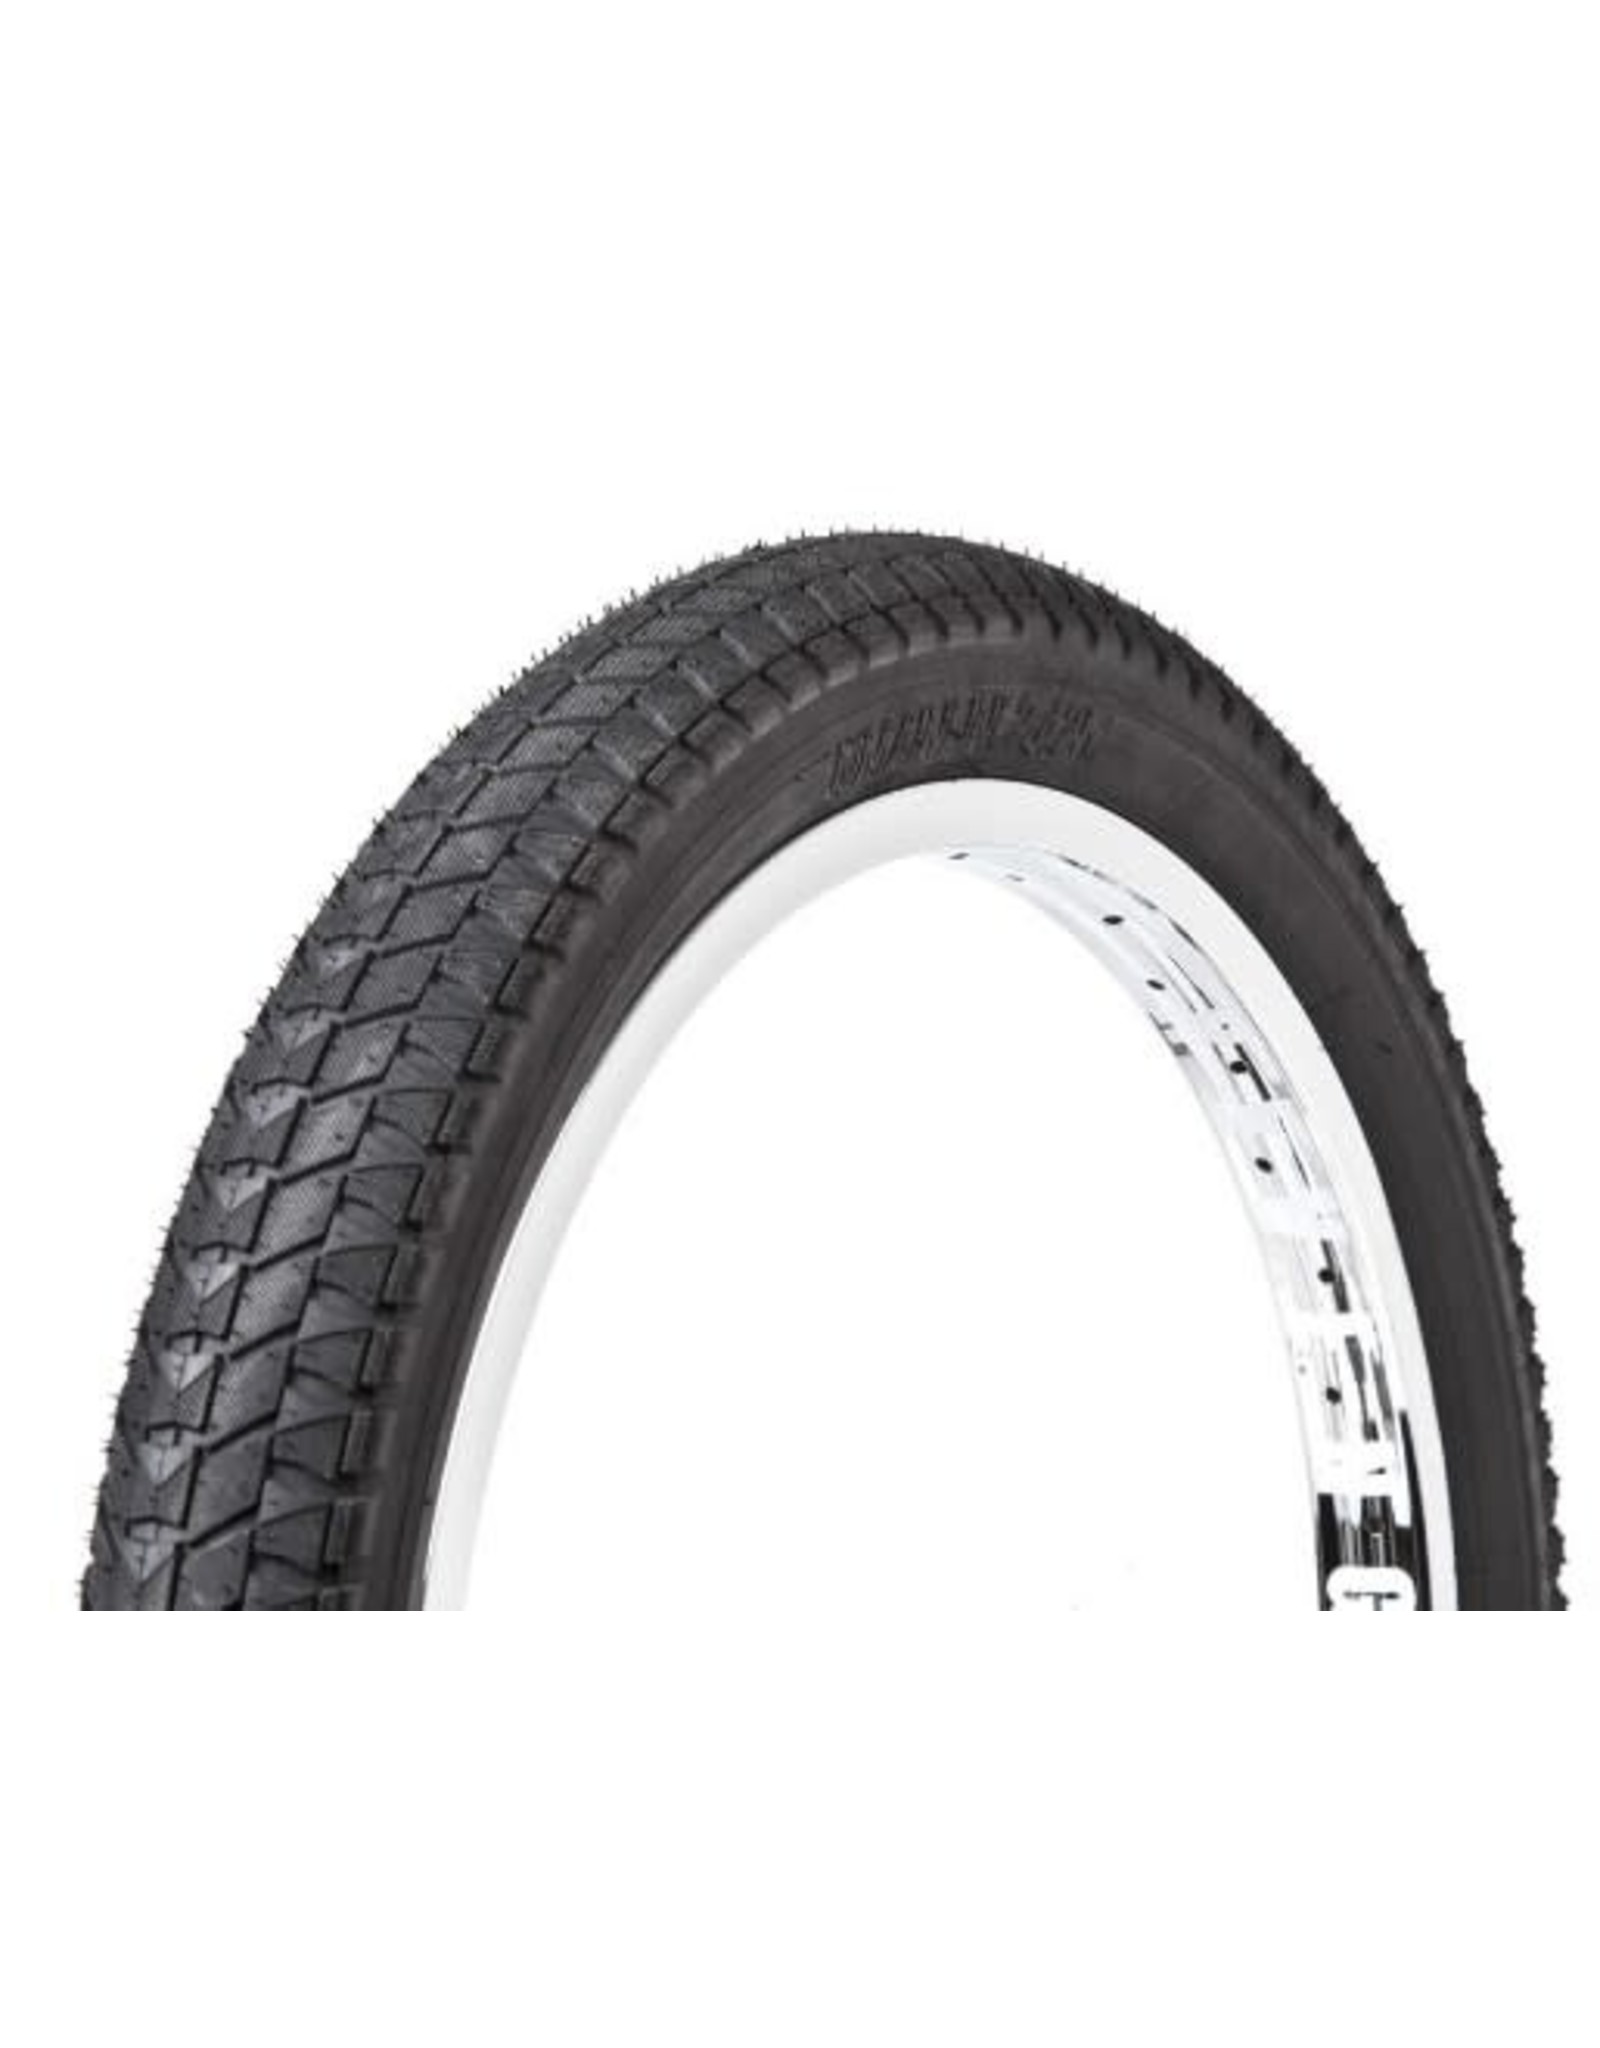 S&M Tire S&M Mainline 20x2.4 black